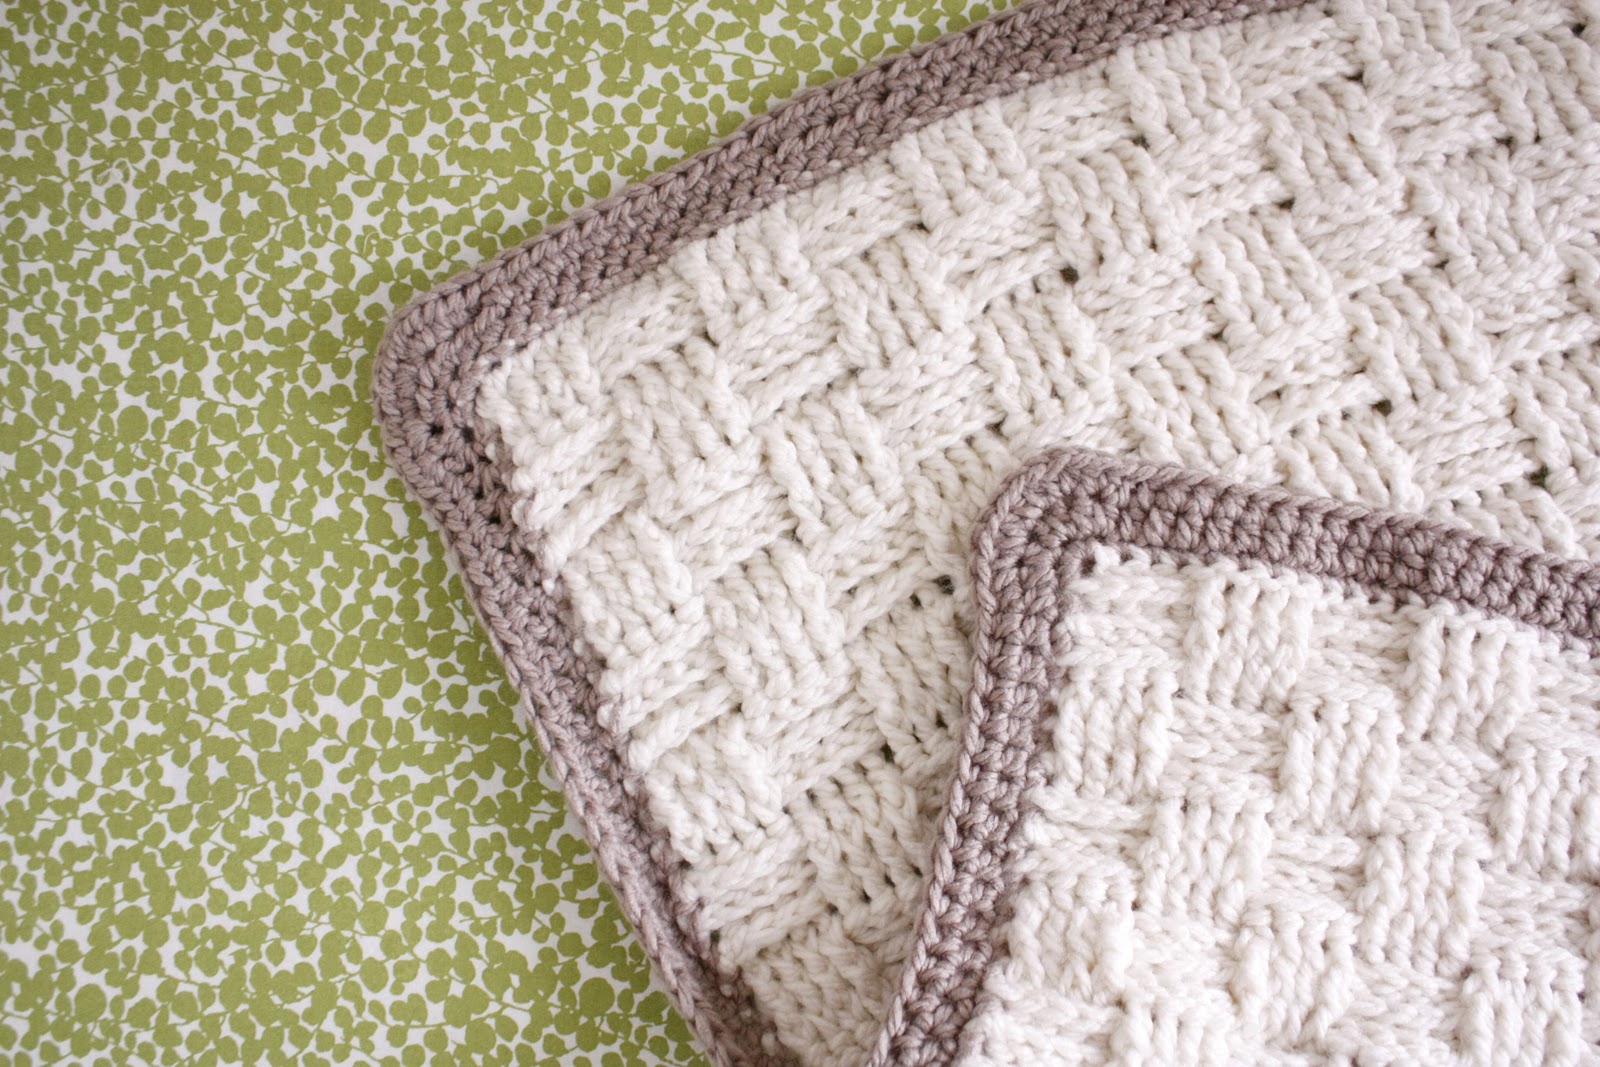 Nesting: Basket Weave Crochet Baby Blanket